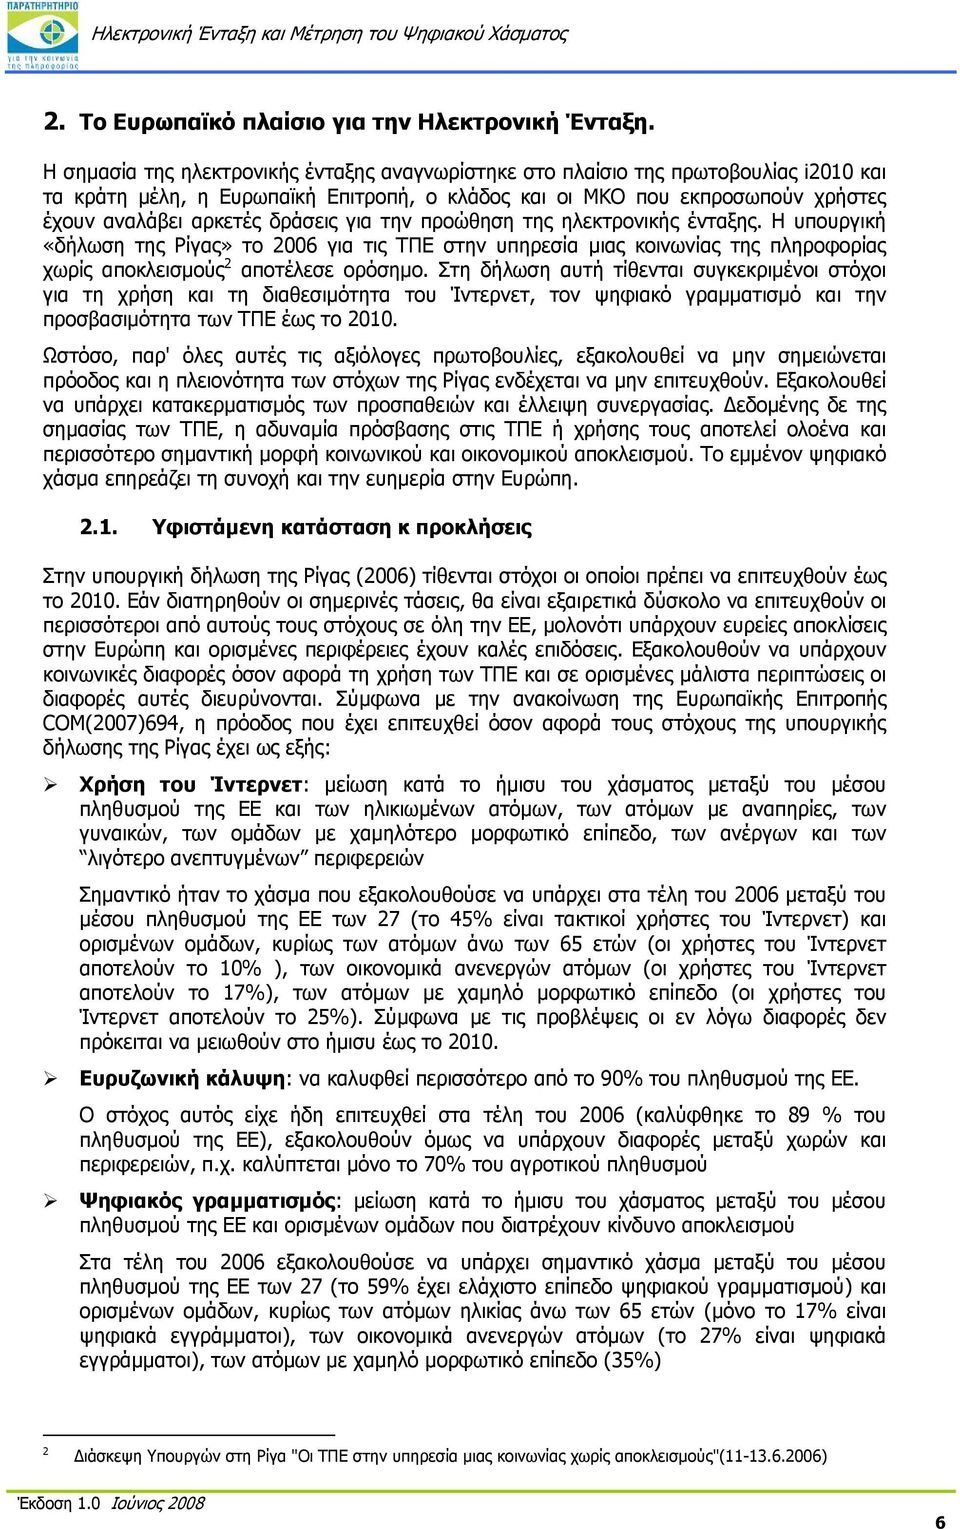 για την προώθηση της ηλεκτρονικής ένταξης. Η υπουργική «δήλωση της Ρίγας» το 2006 για τις ΤΠΕ στην υπηρεσία μιας κοινωνίας της πληροφορίας χωρίς αποκλεισμούς 2 αποτέλεσε ορόσημο.